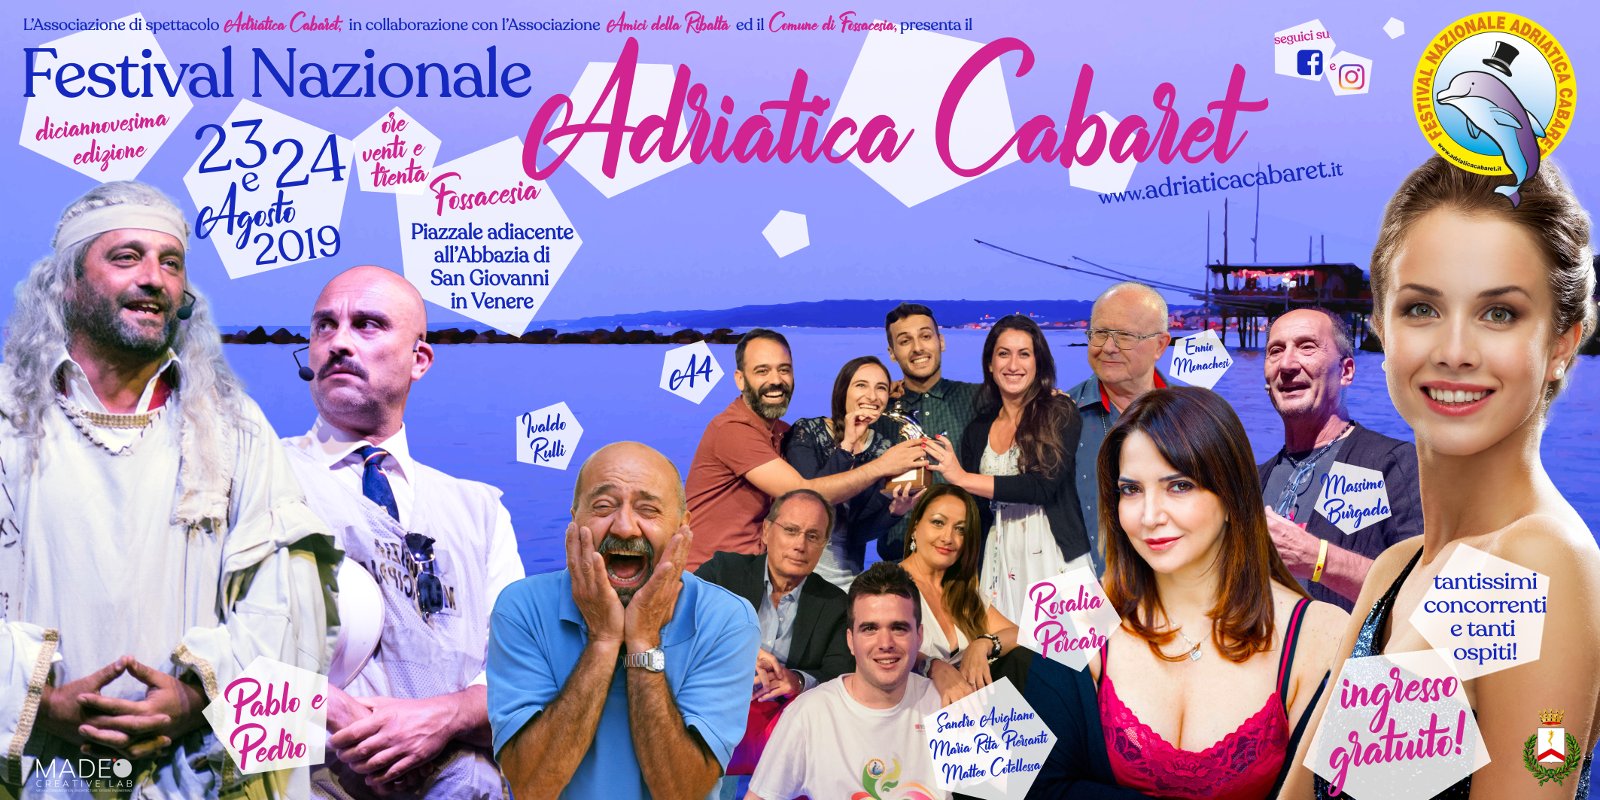 Chiude con il tutto esaurito la XIX edizione del Festival Nazionale Adriatica Cabaret